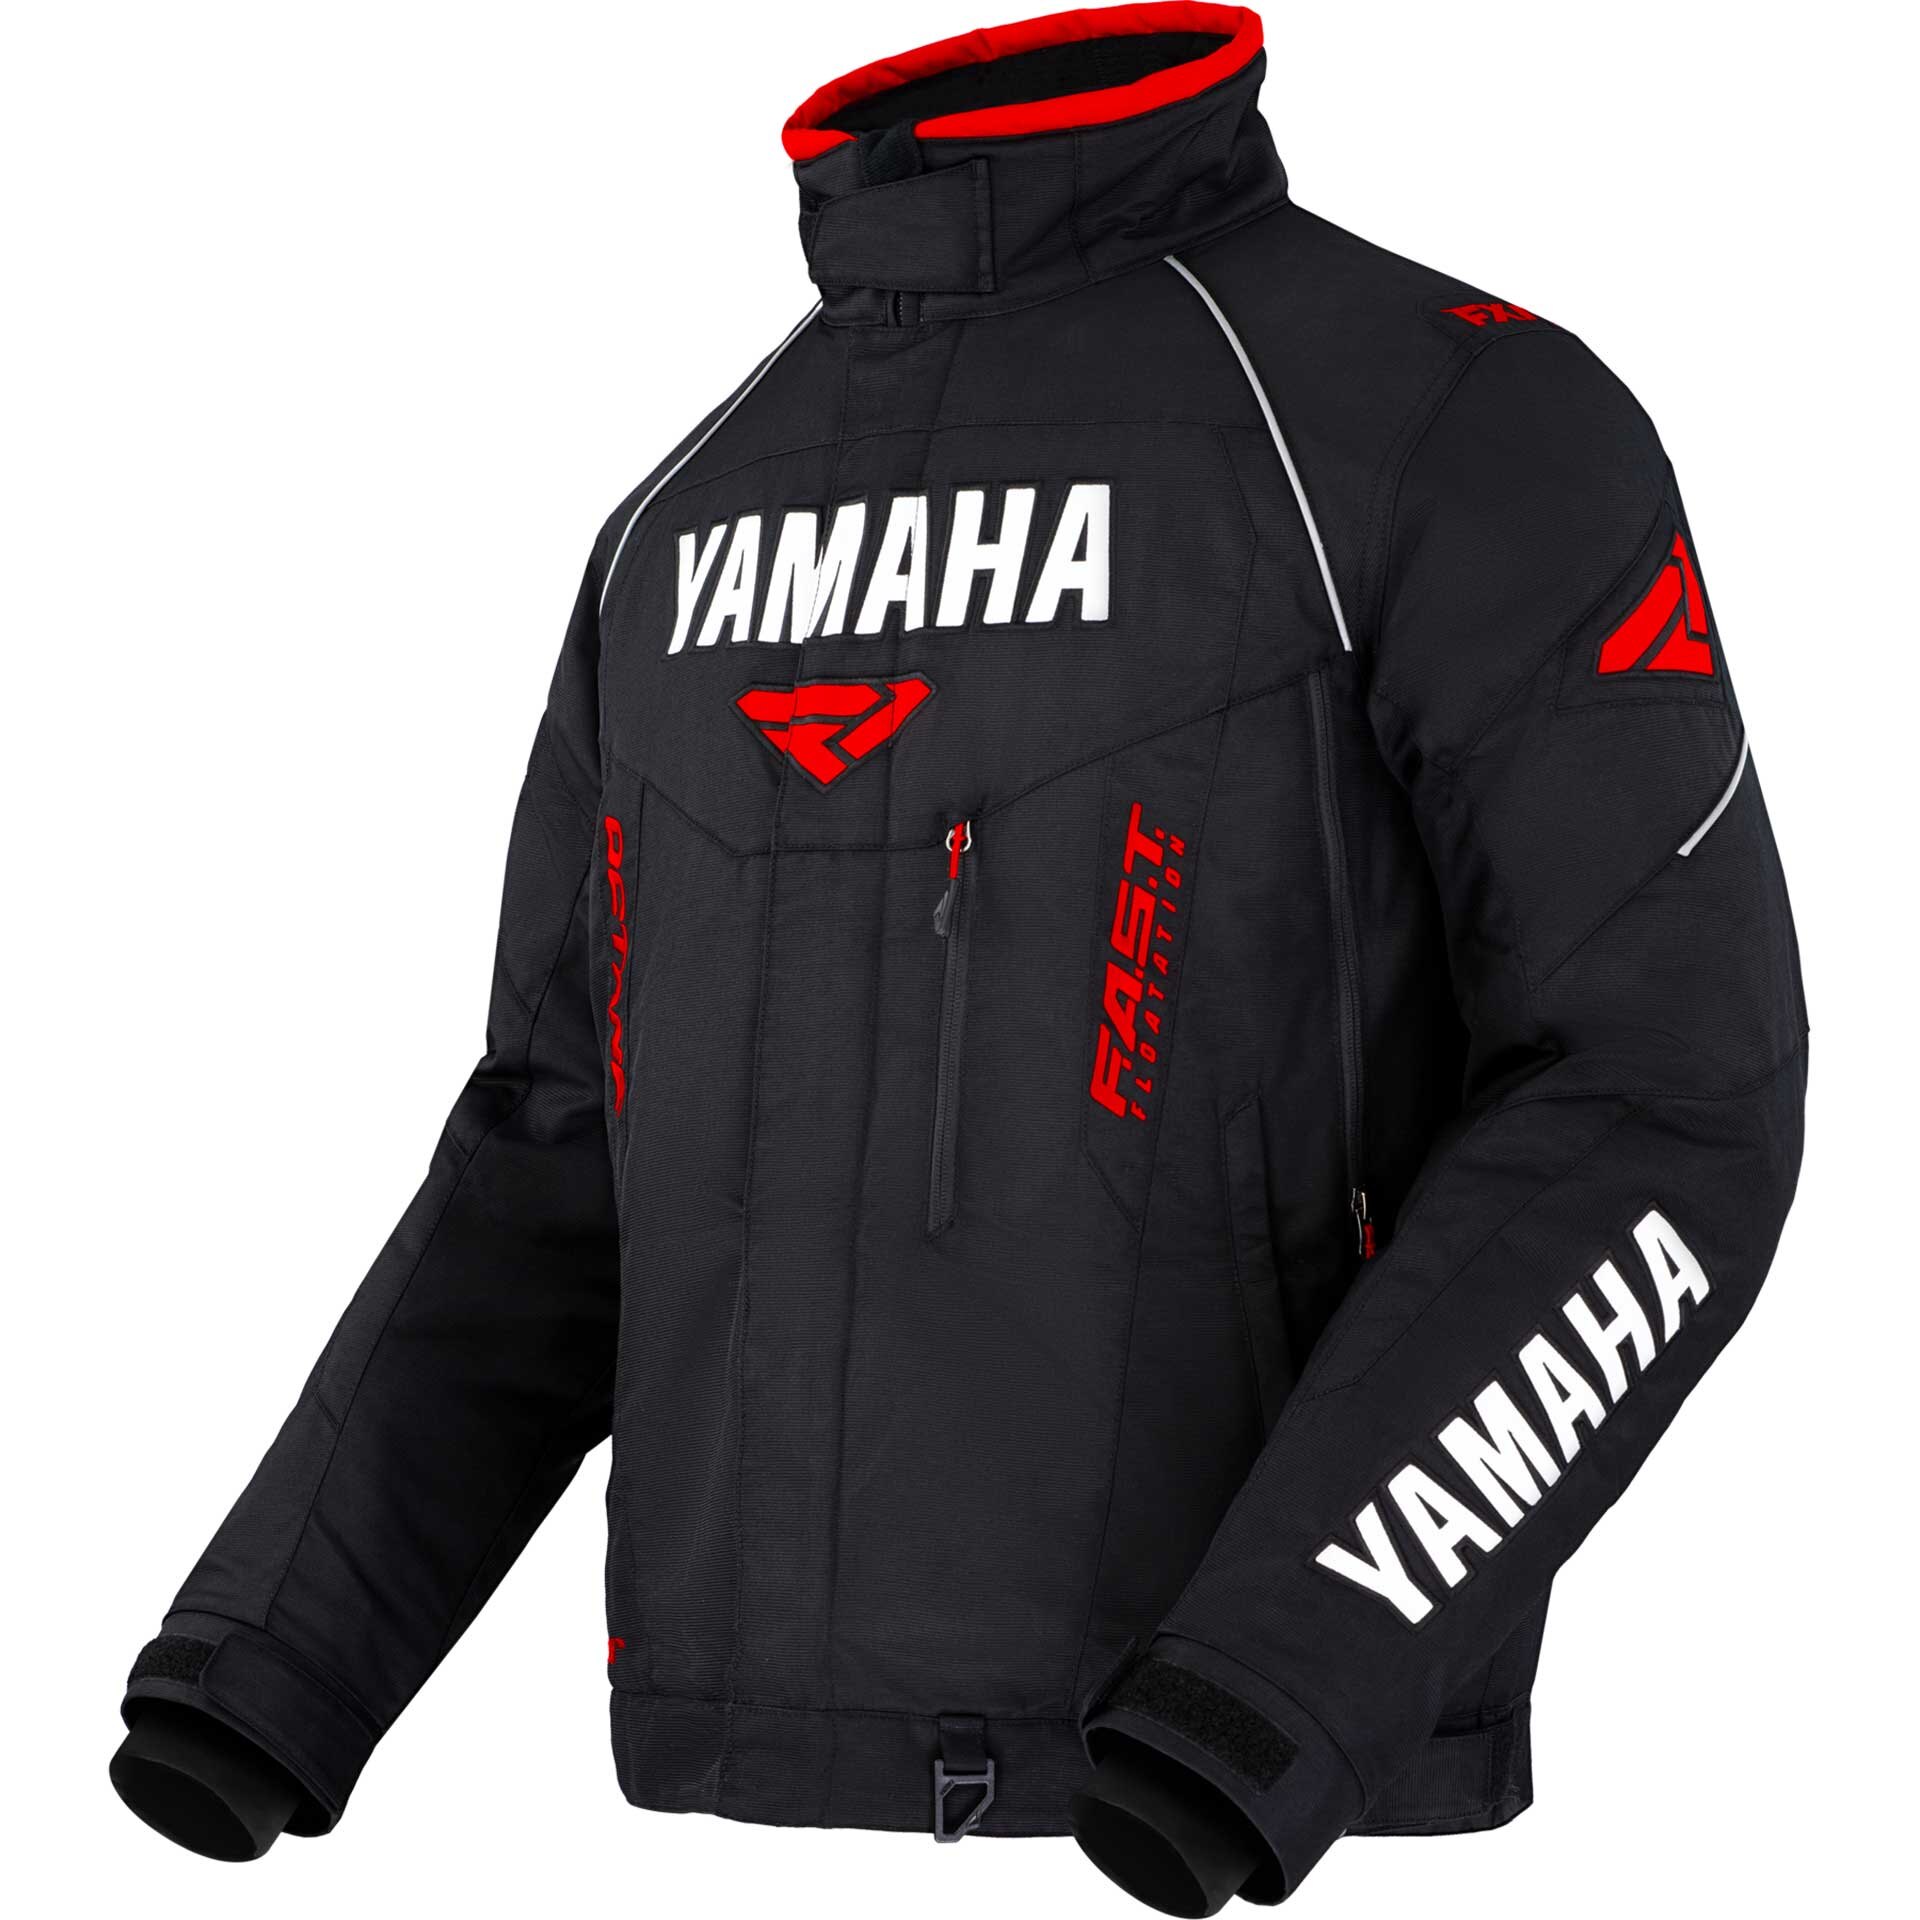 Yamaha Octane Jacket by FXR® Large red/black